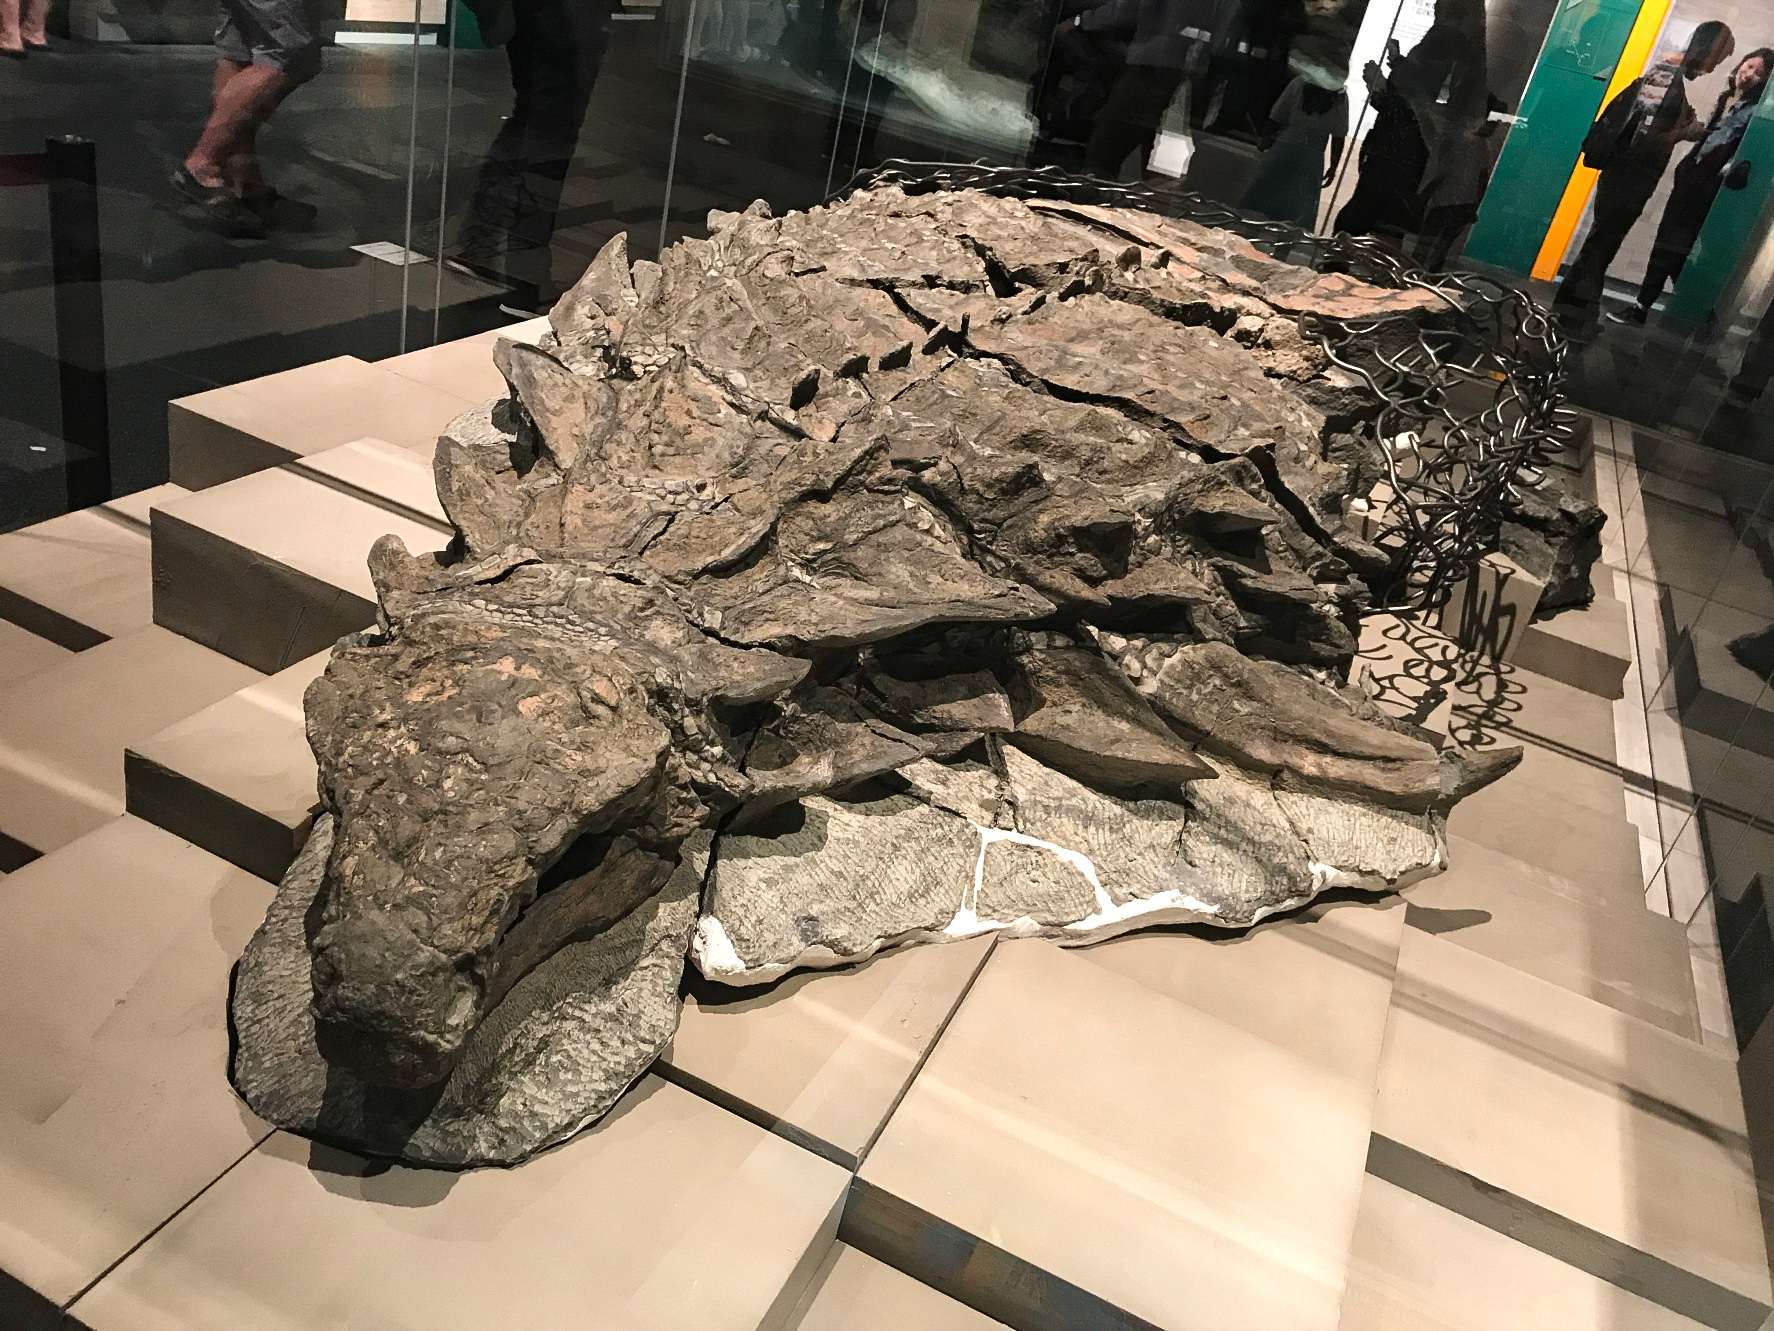 Borealopelta (itumo "Awa asà ariwa") jẹ iwin ti nodosaurid ankylosaur lati Ibẹrẹ Cretaceous ti Alberta, Canada. O ni eya kan, B. markmitchelli, ti a npè ni 2017 nipasẹ Caleb Brown ati awọn ẹlẹgbẹ lati inu apẹrẹ ti o ni ipamọ daradara ti a mọ ni Suncor nodosaur.